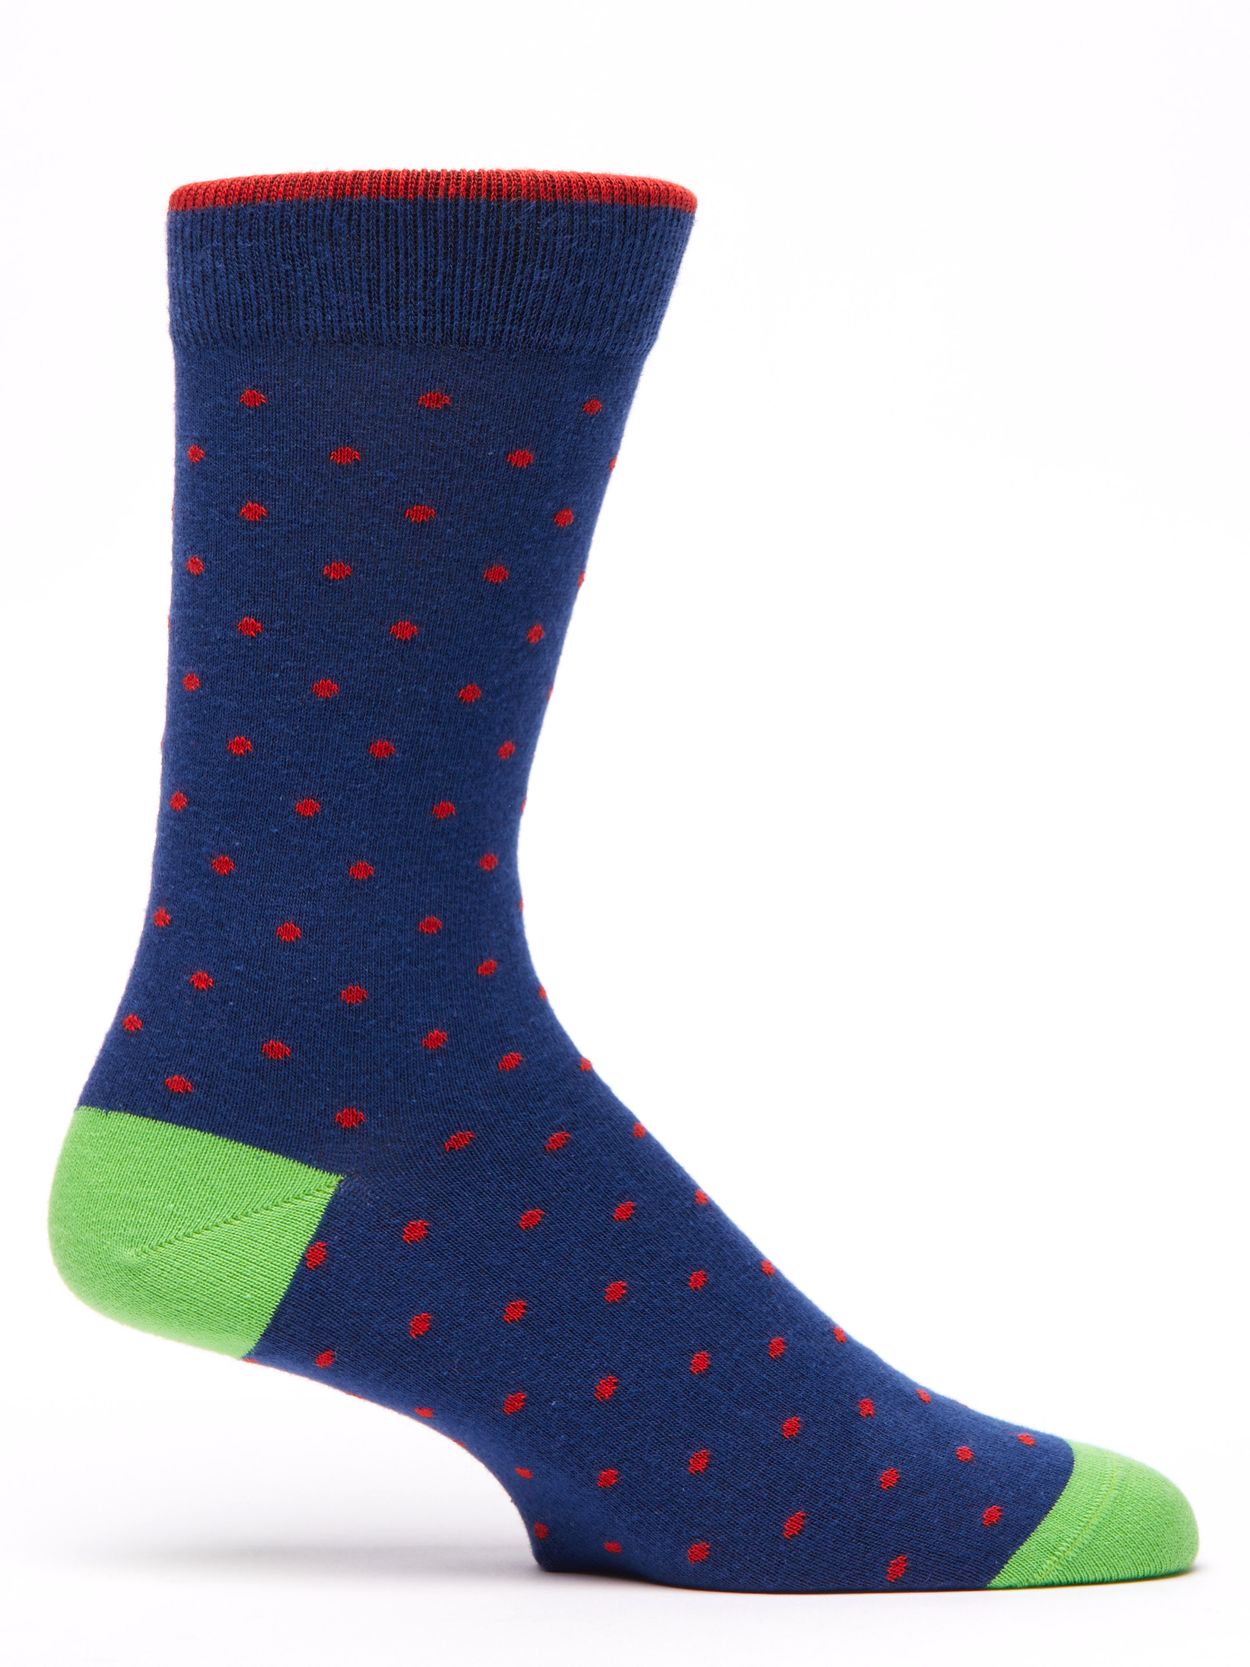 Blue & Red Socks Aviles